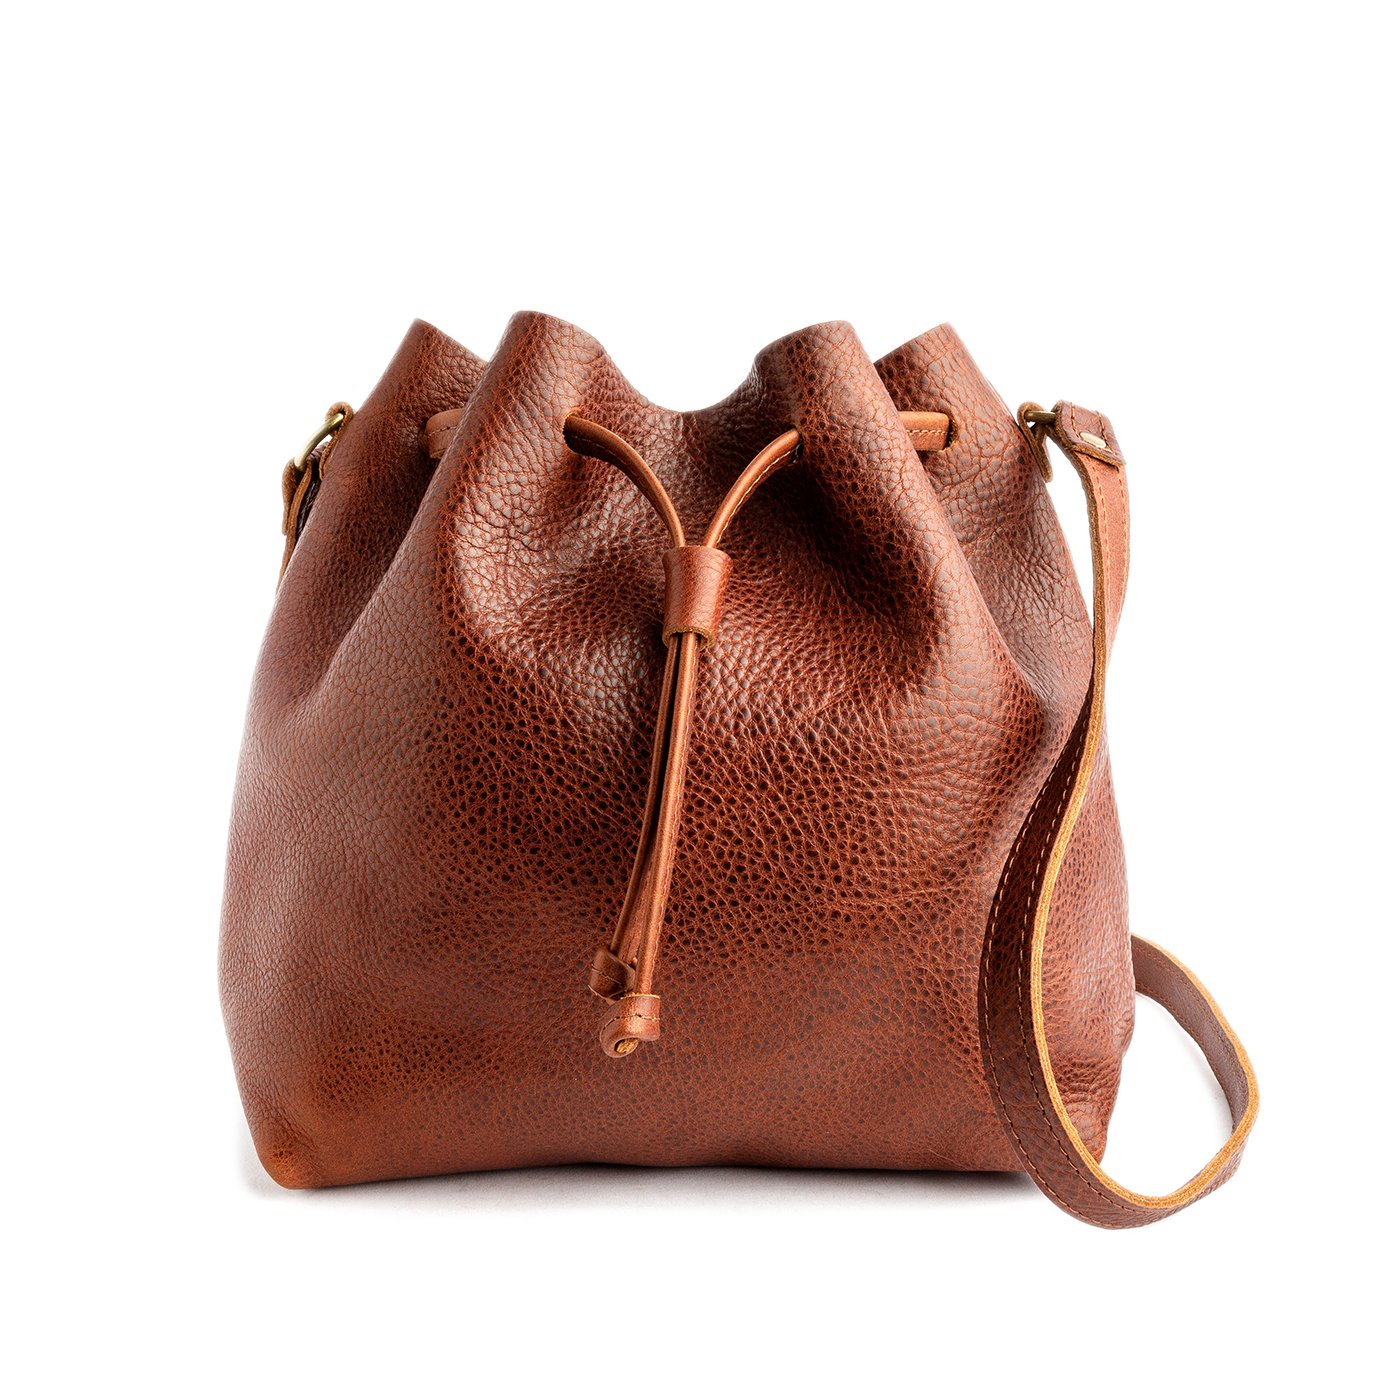 Leather Bucket Bag Cognac Brown